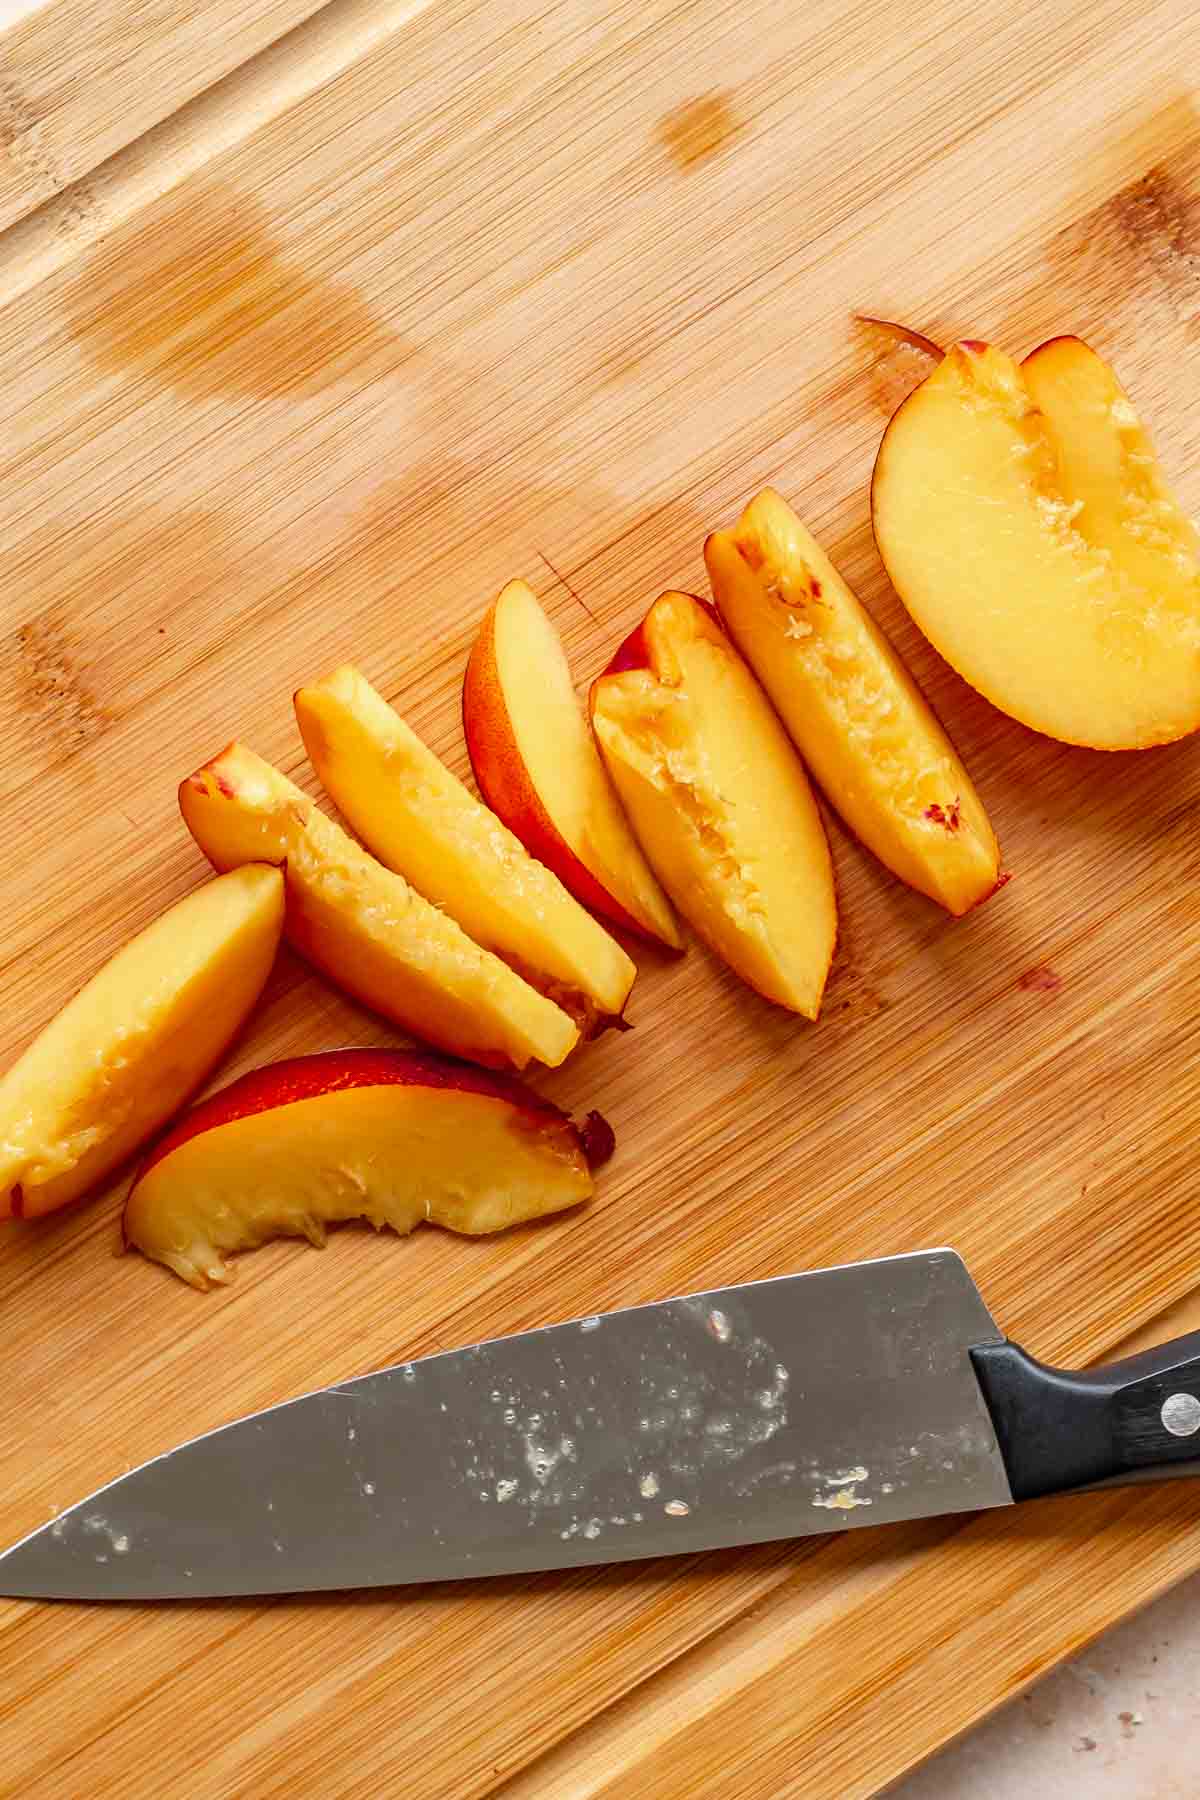 Peach slices on a cutting board.